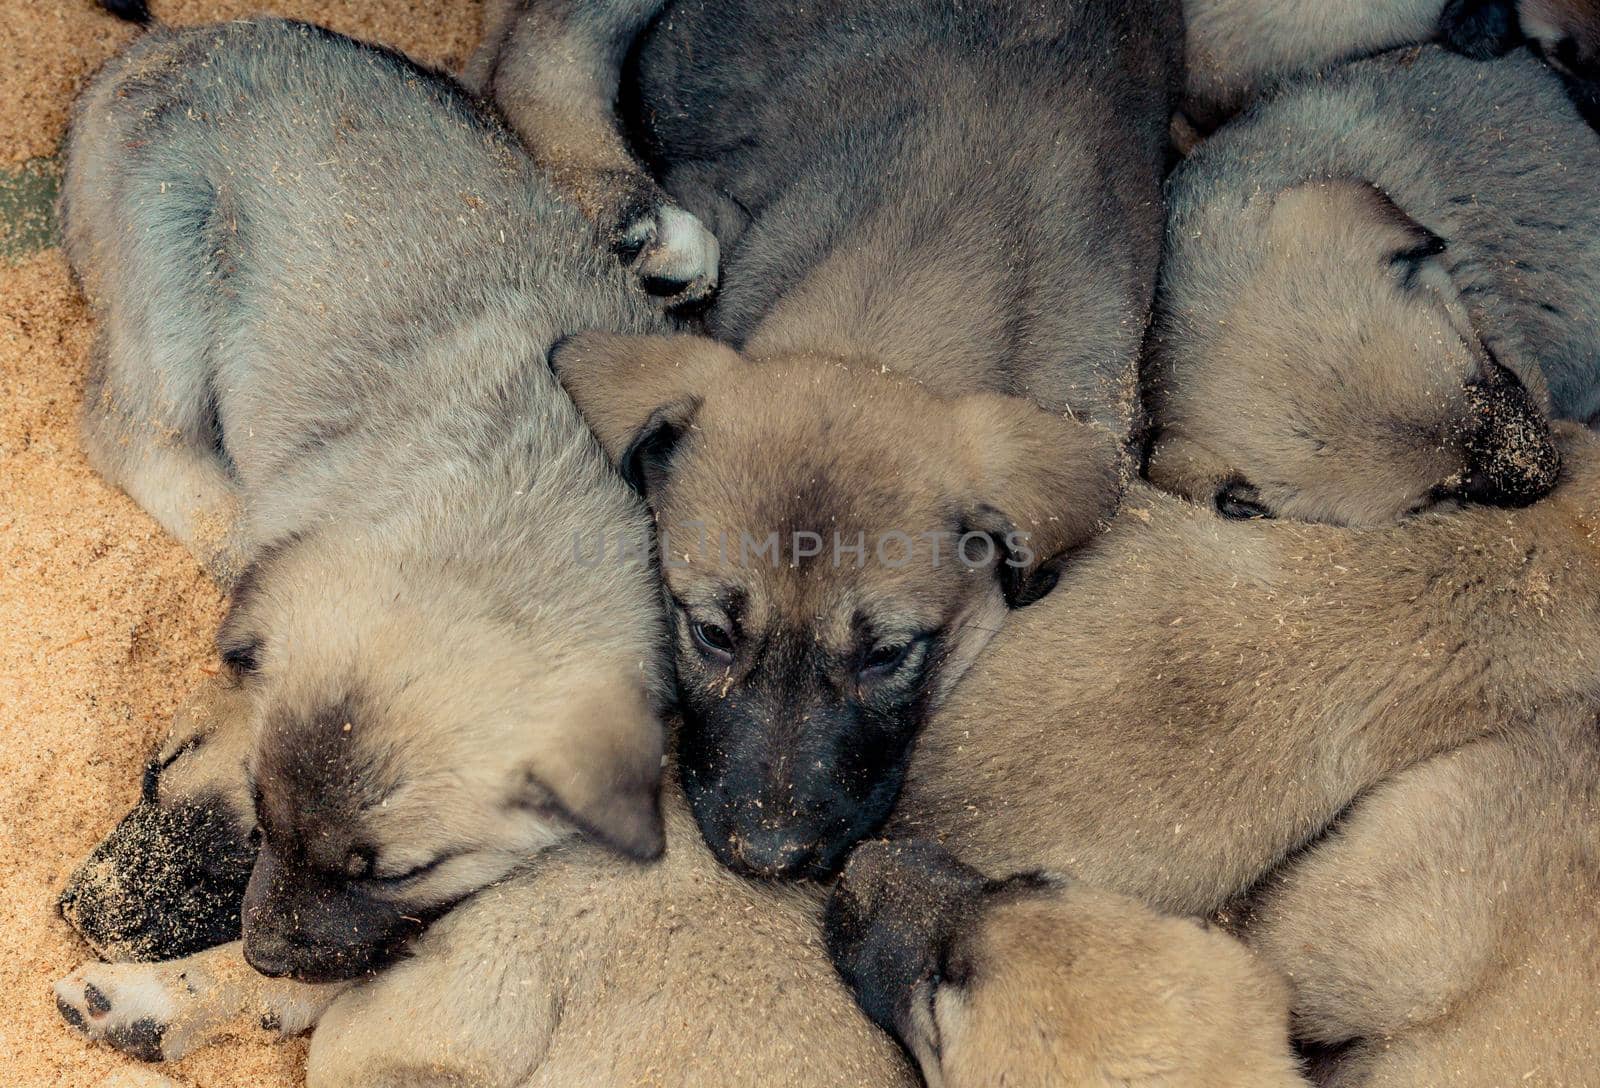 Turkish breed shepherd dog puppies  Kangal as livestock guarding dog